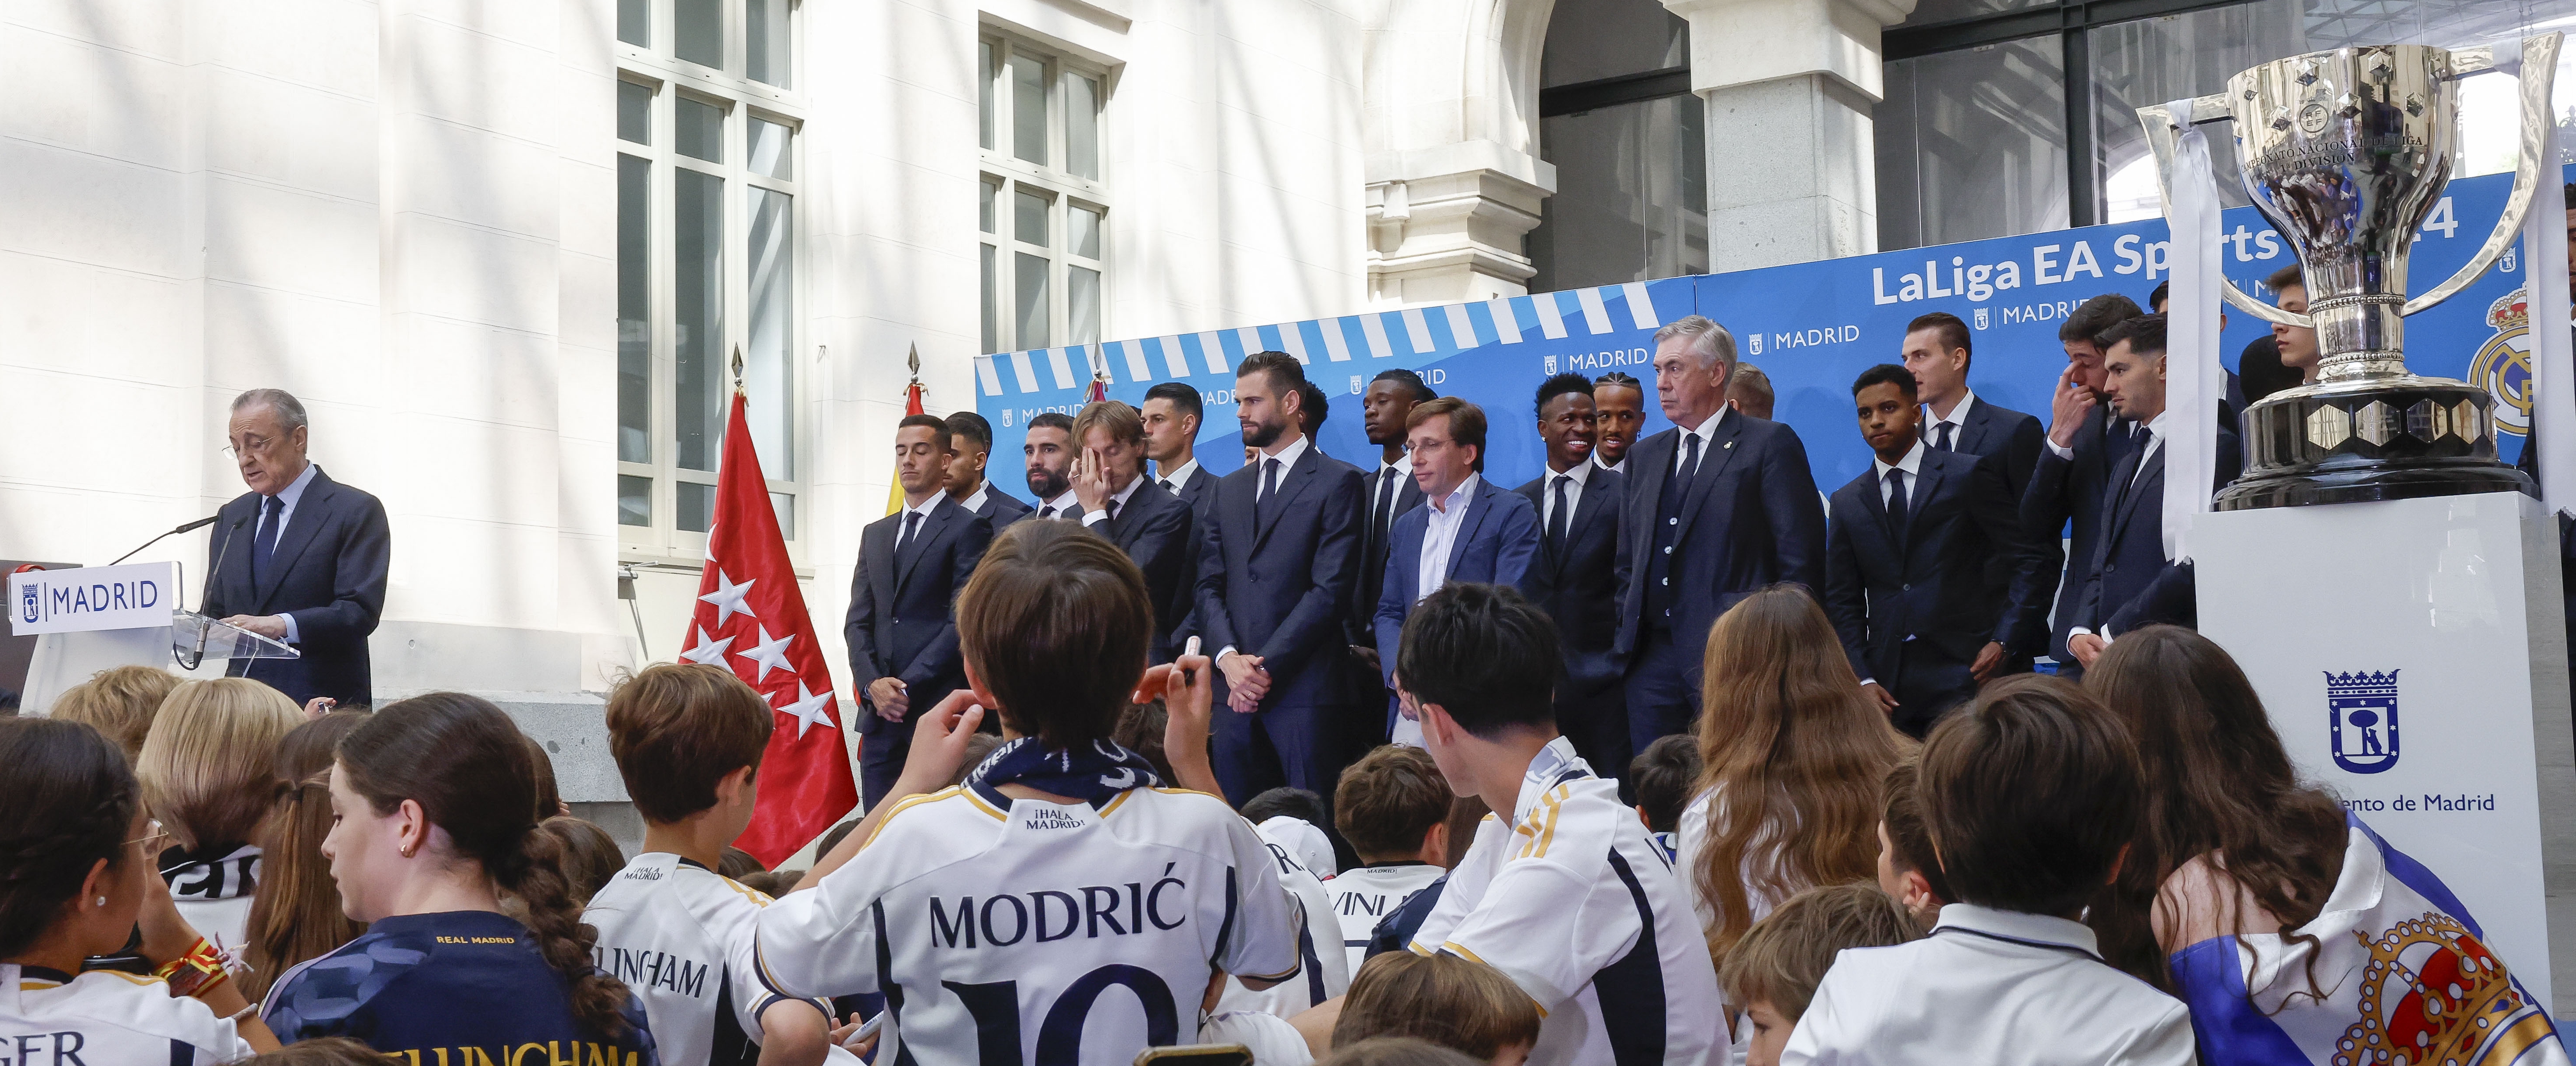 El presidente del Real Madrid, Florentino Pérez (i), pronuncia unas palabras durante la recepción que ha tenido lugar en ayuntamiento de la capital como parte de los actos de celebración de la trigésimo sexta Liga conseguida por el equipo este domingo en Madrid. (Foto Prensa Libre: EFE)